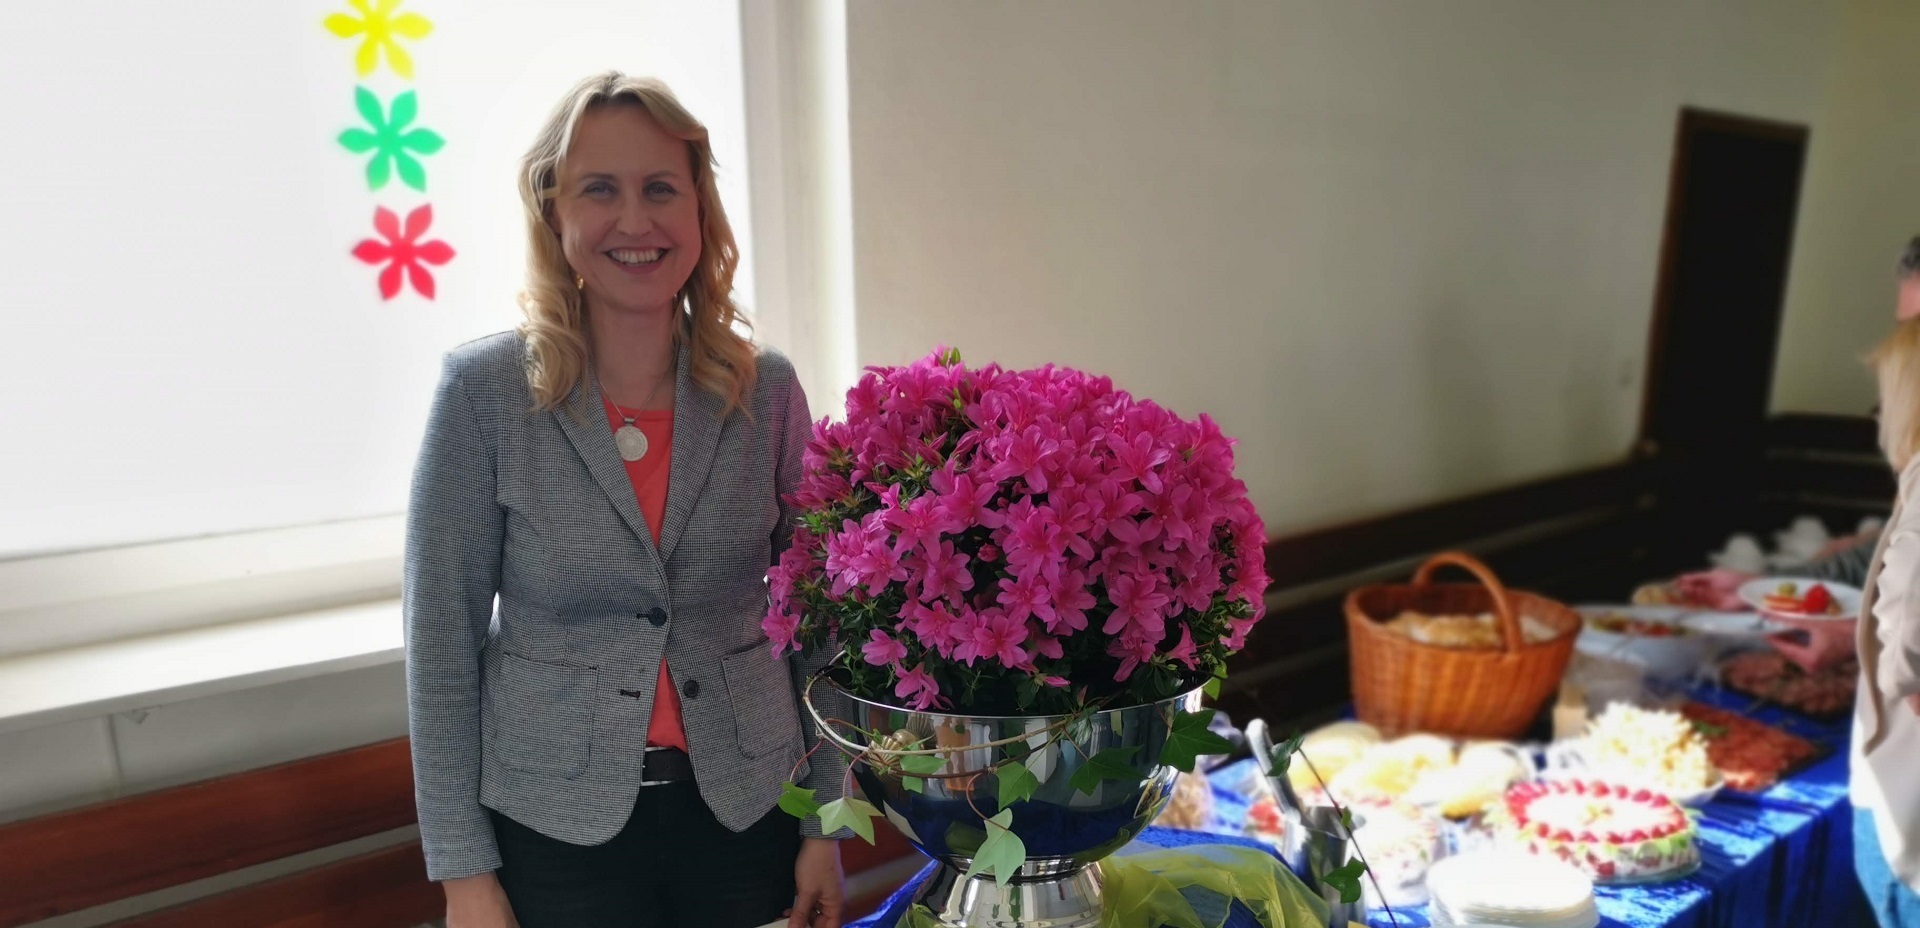 Nuoširdžiai sveikiname Vasario 16-osios gimnazijos direktorę Rasą Weiß, balandžio mėnesį šventusią savo 50-metį!